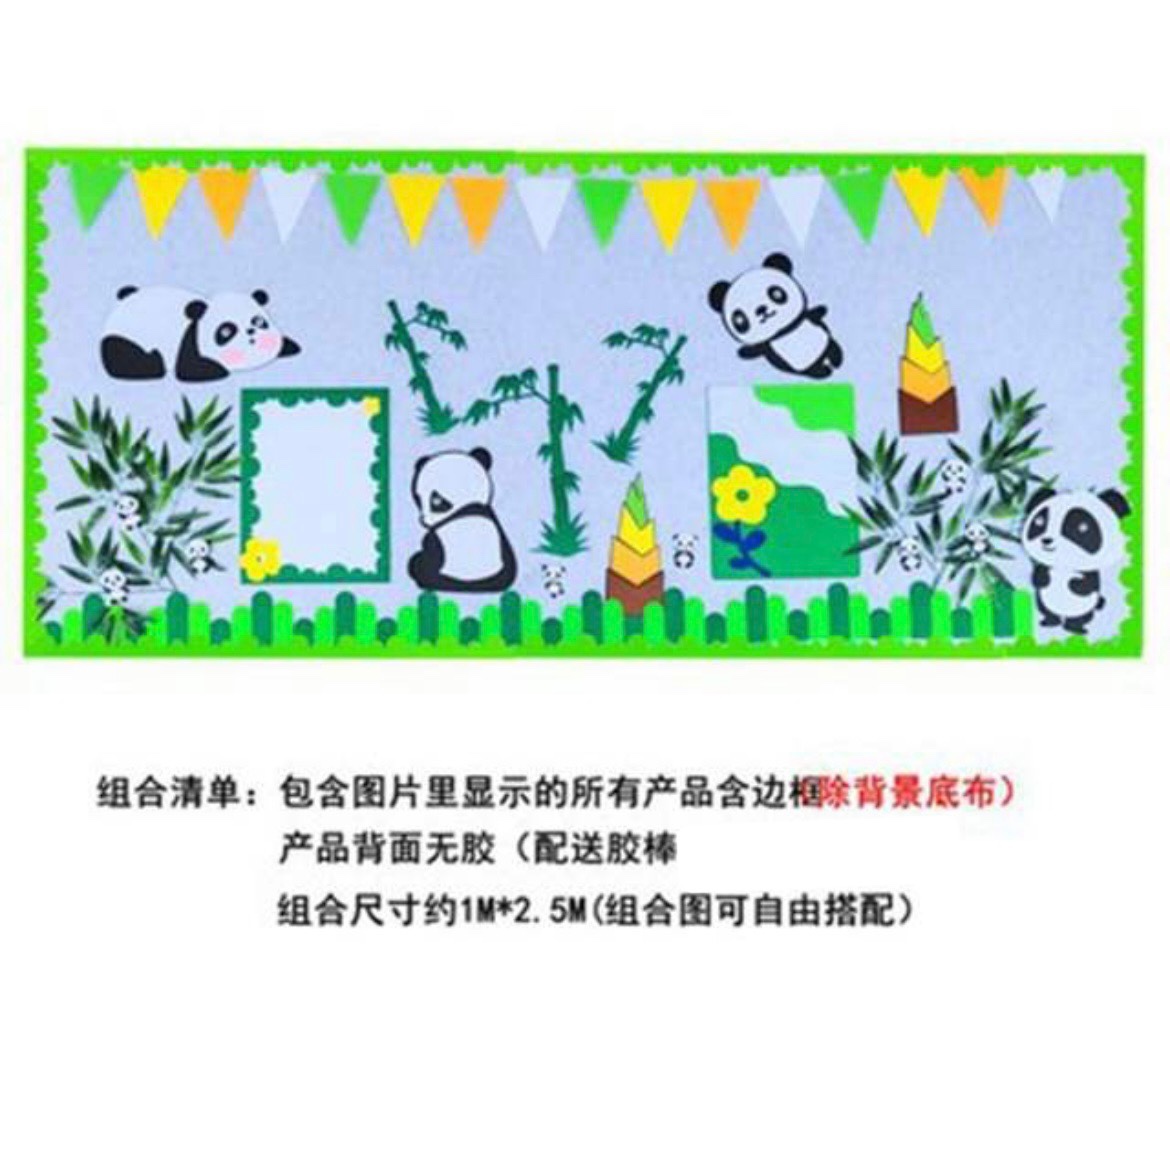 卡通创意熊猫竹子墙贴 幼儿园墙面装饰班级文化布置区角环创贴画